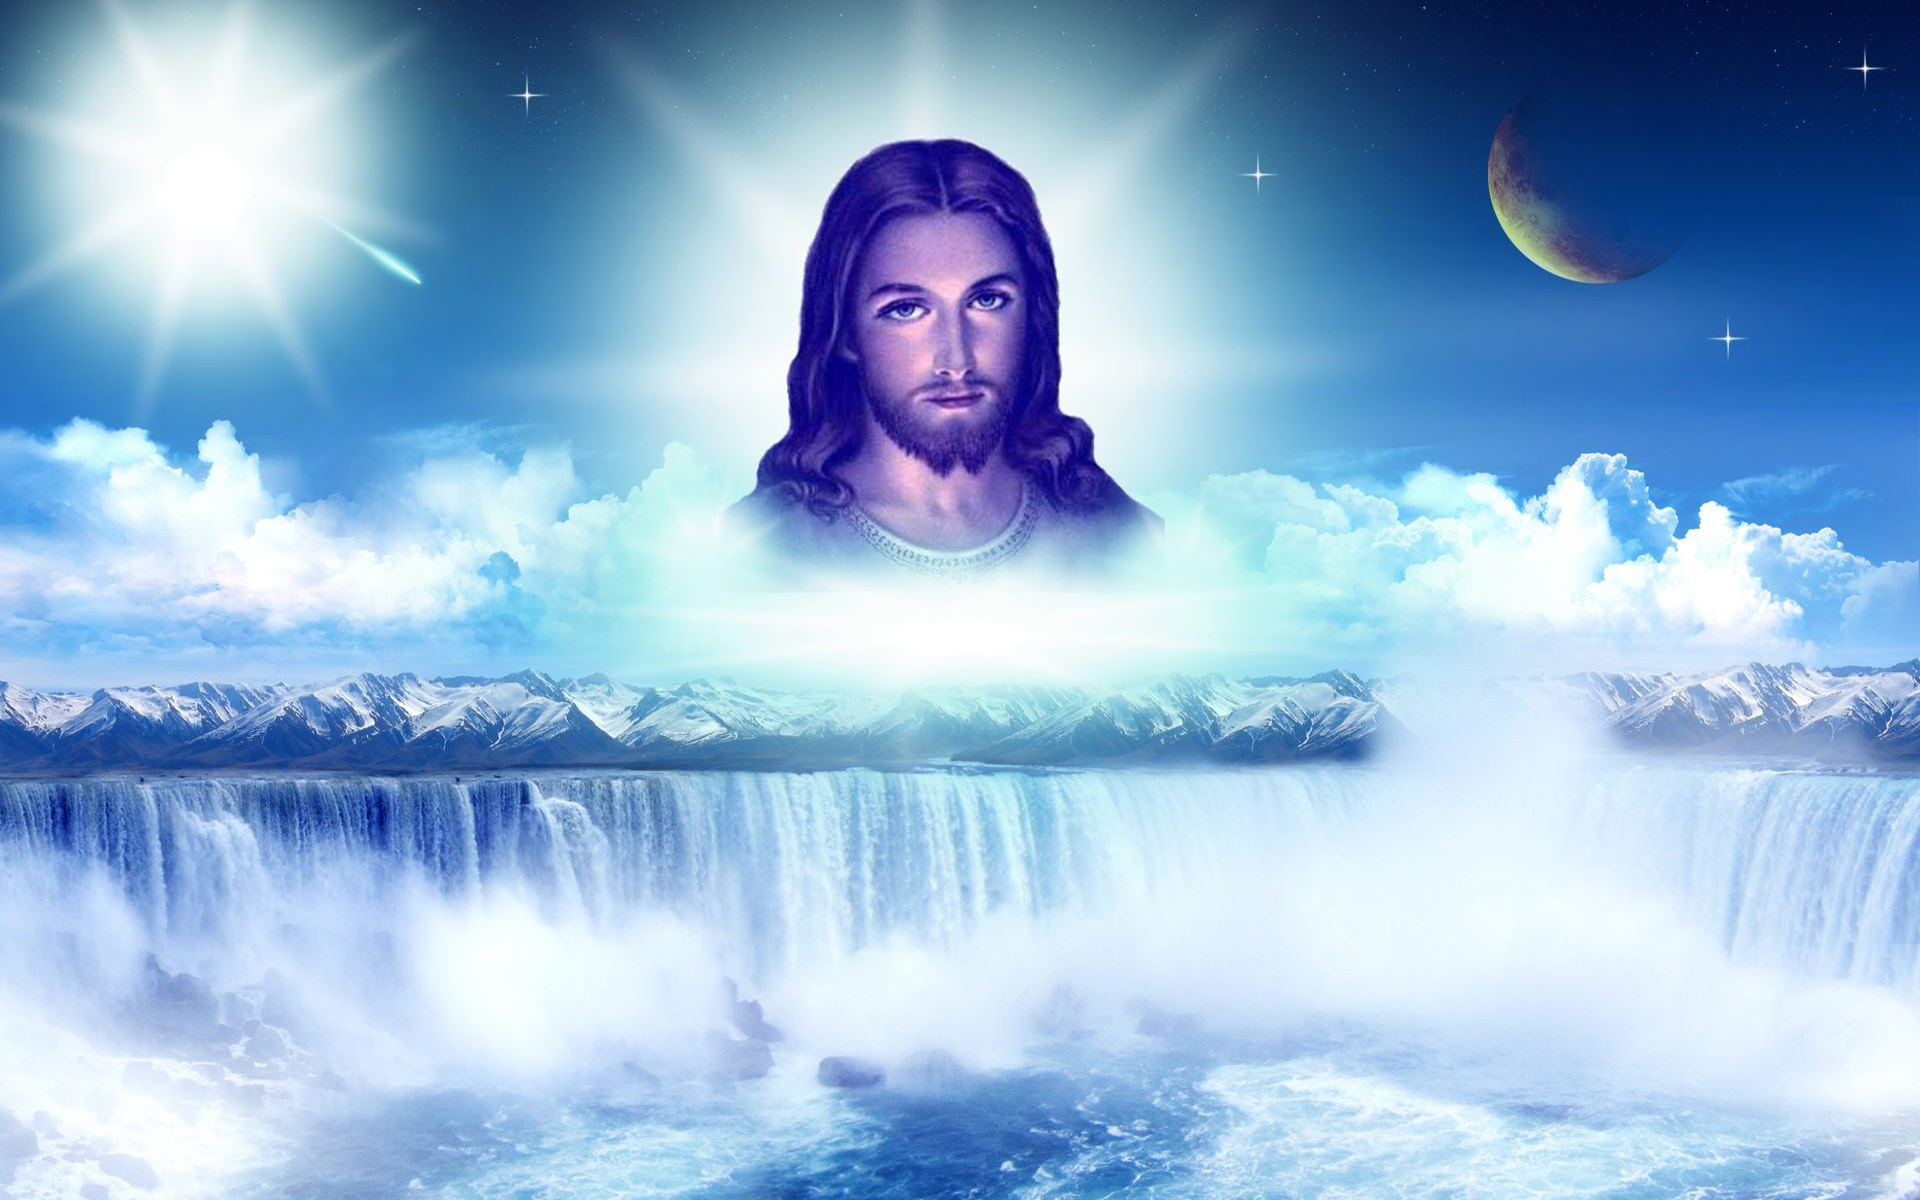 Beautiful Pictures Of Jesus Wallpaper - WallpaperSafari